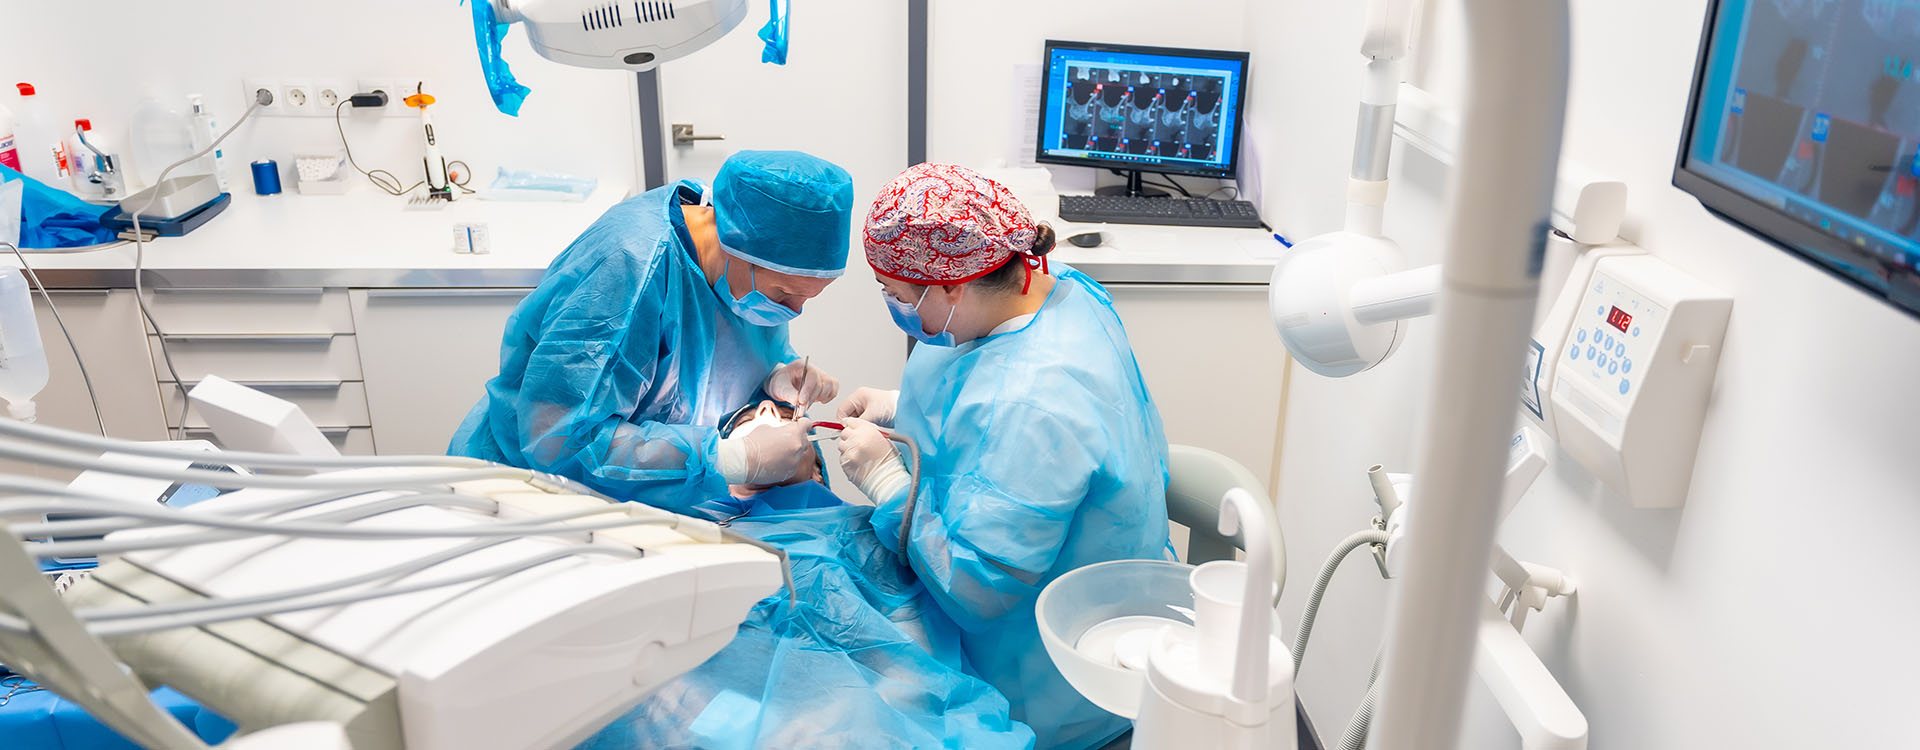 Clínica Dental Andrea Compte, tu Centro Odontológico especializado. Implantes dentales (Implantología) en Alcalá de Xivert. Dentistas realizando un implante al paciente.